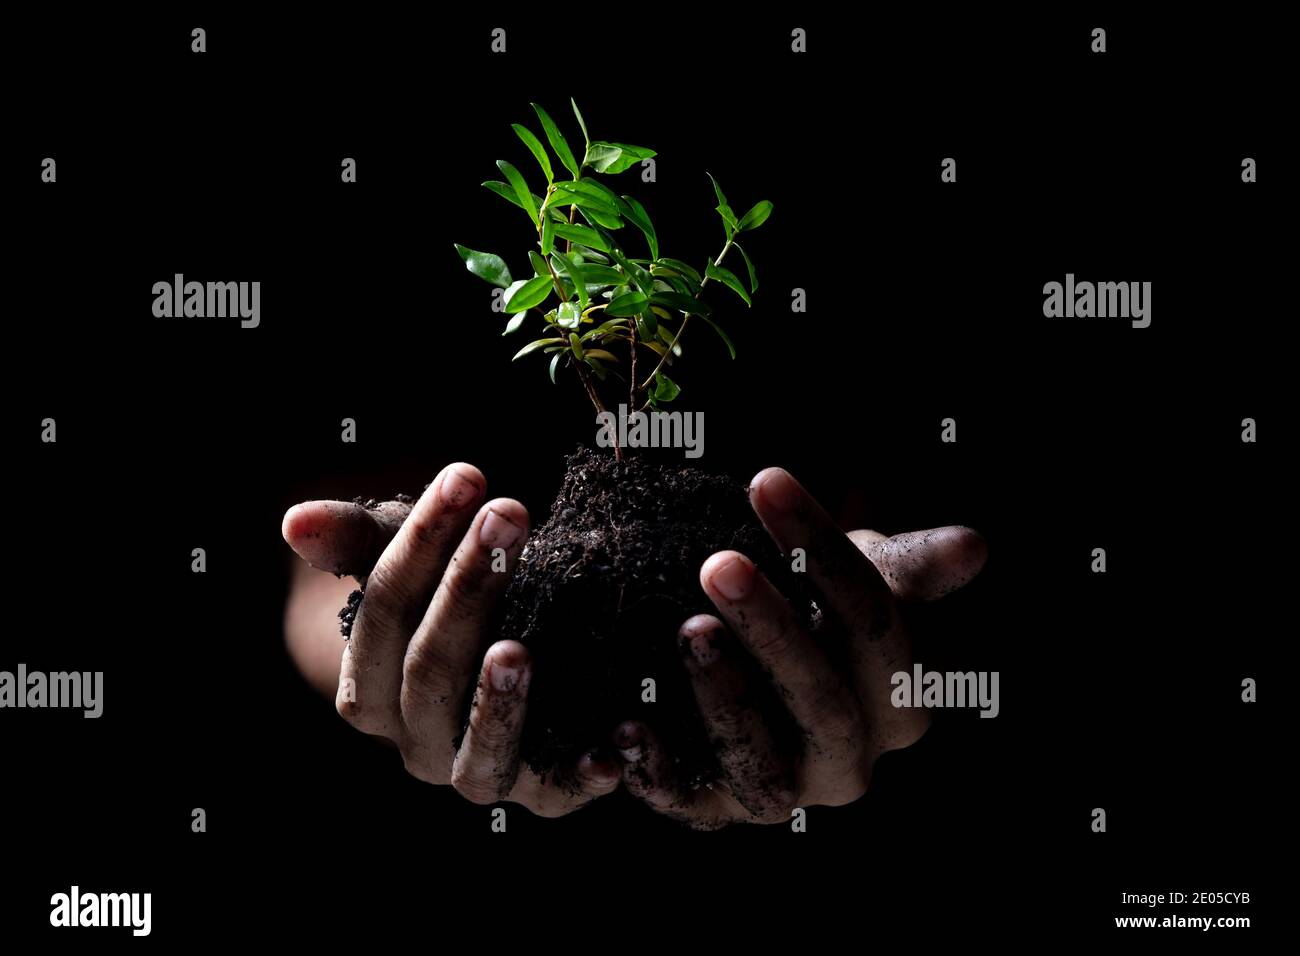 Hände halten eine junge grüne Pflanze wächst.Schwarzer Hintergrund Stockfoto